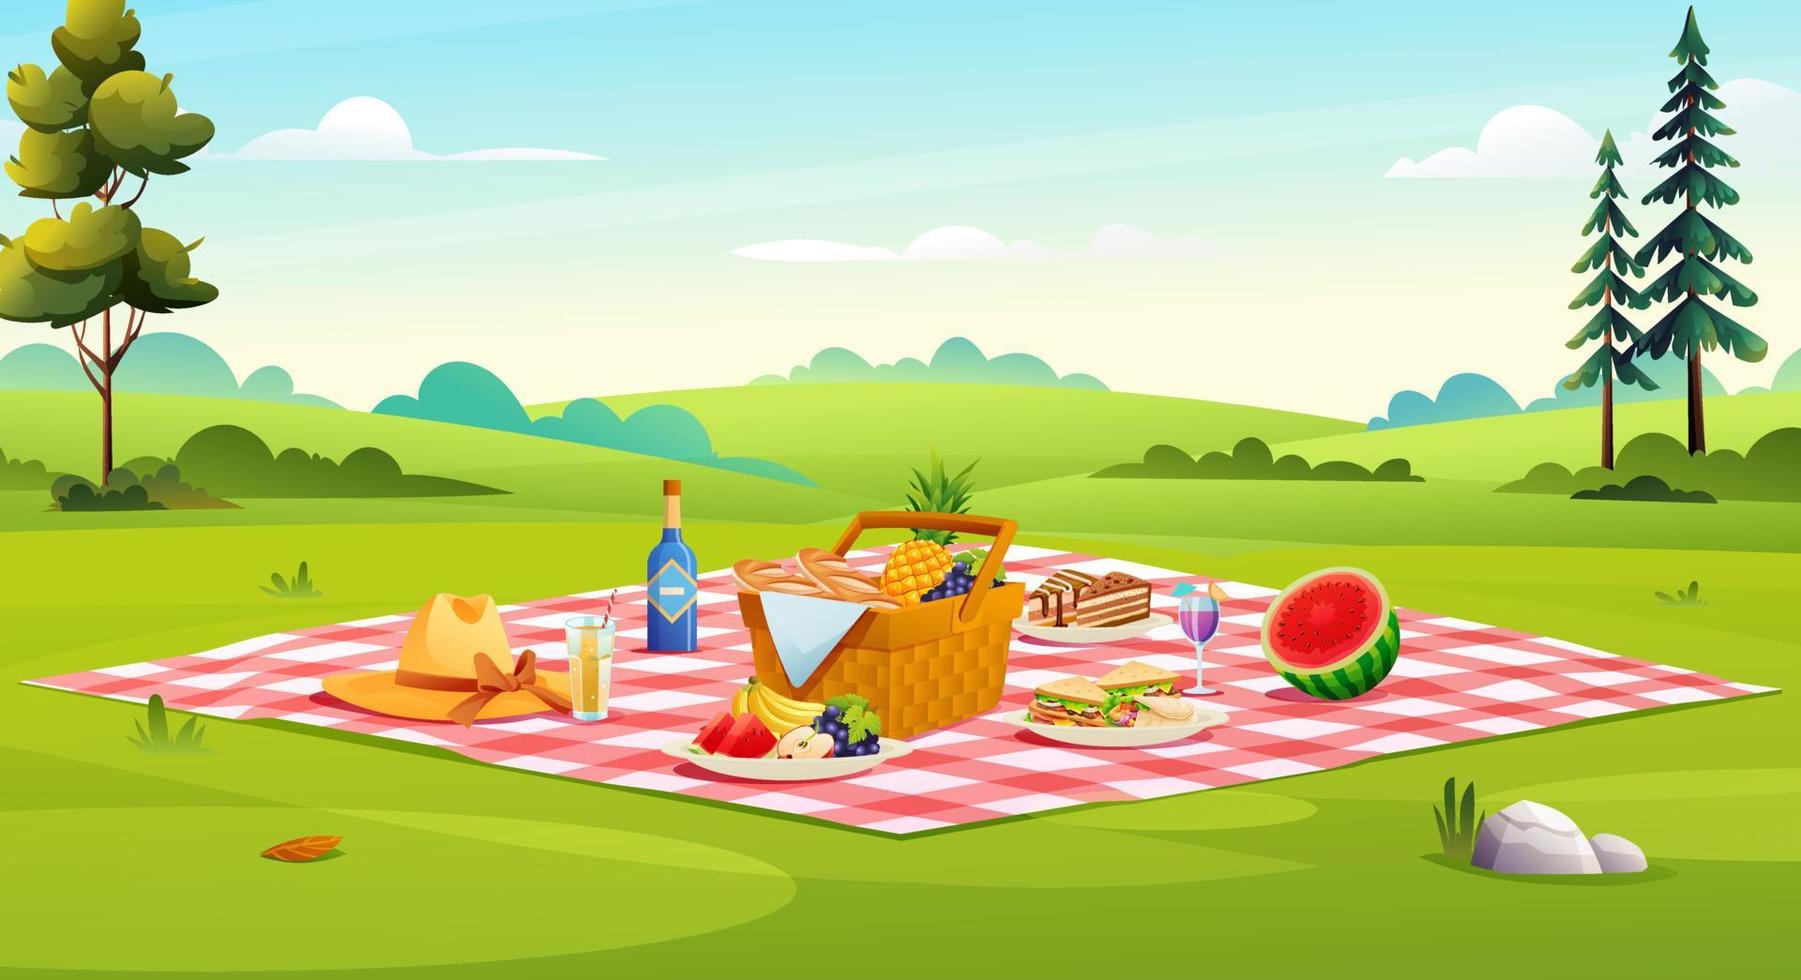 configuration de pique-nique composée d'un panier avec de la nourriture, des fruits, des sandwichs, des cupcakes illustration vectorielle vecteur